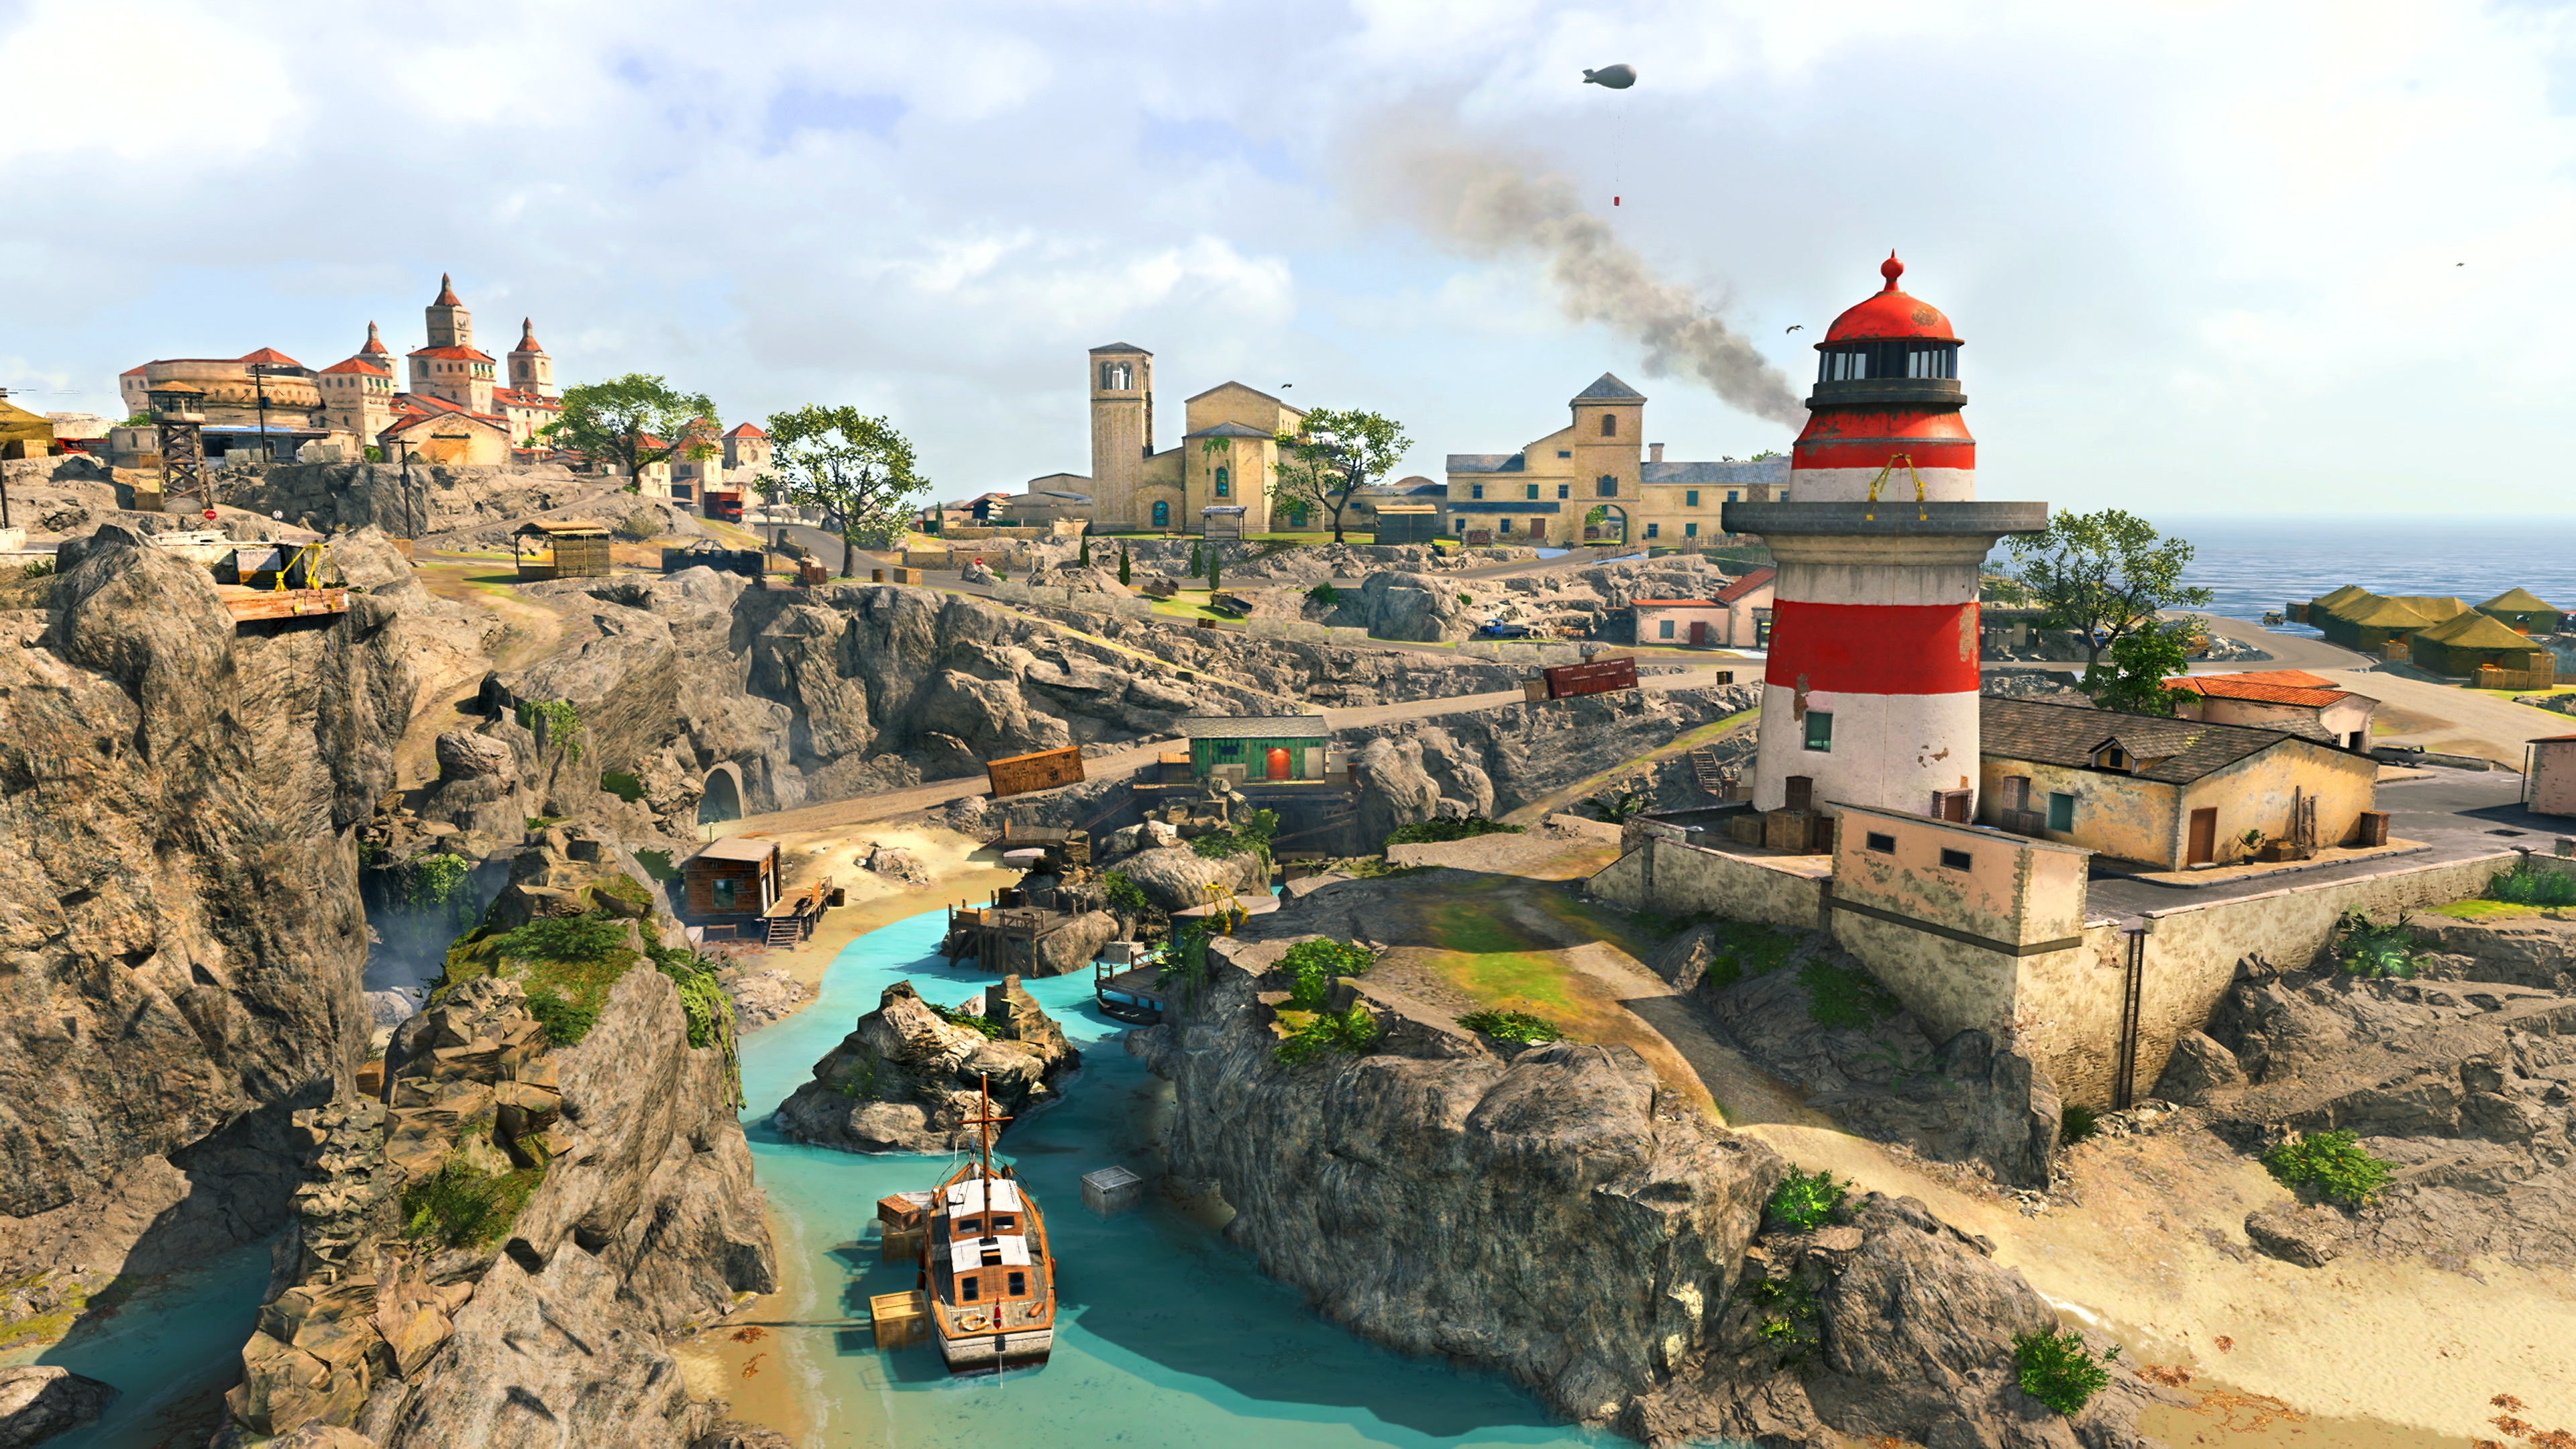 Captura de pantalla de Call of Duty Warzone mostrando el nuevo mapa Fortune's Keep con un faro rojo y azul